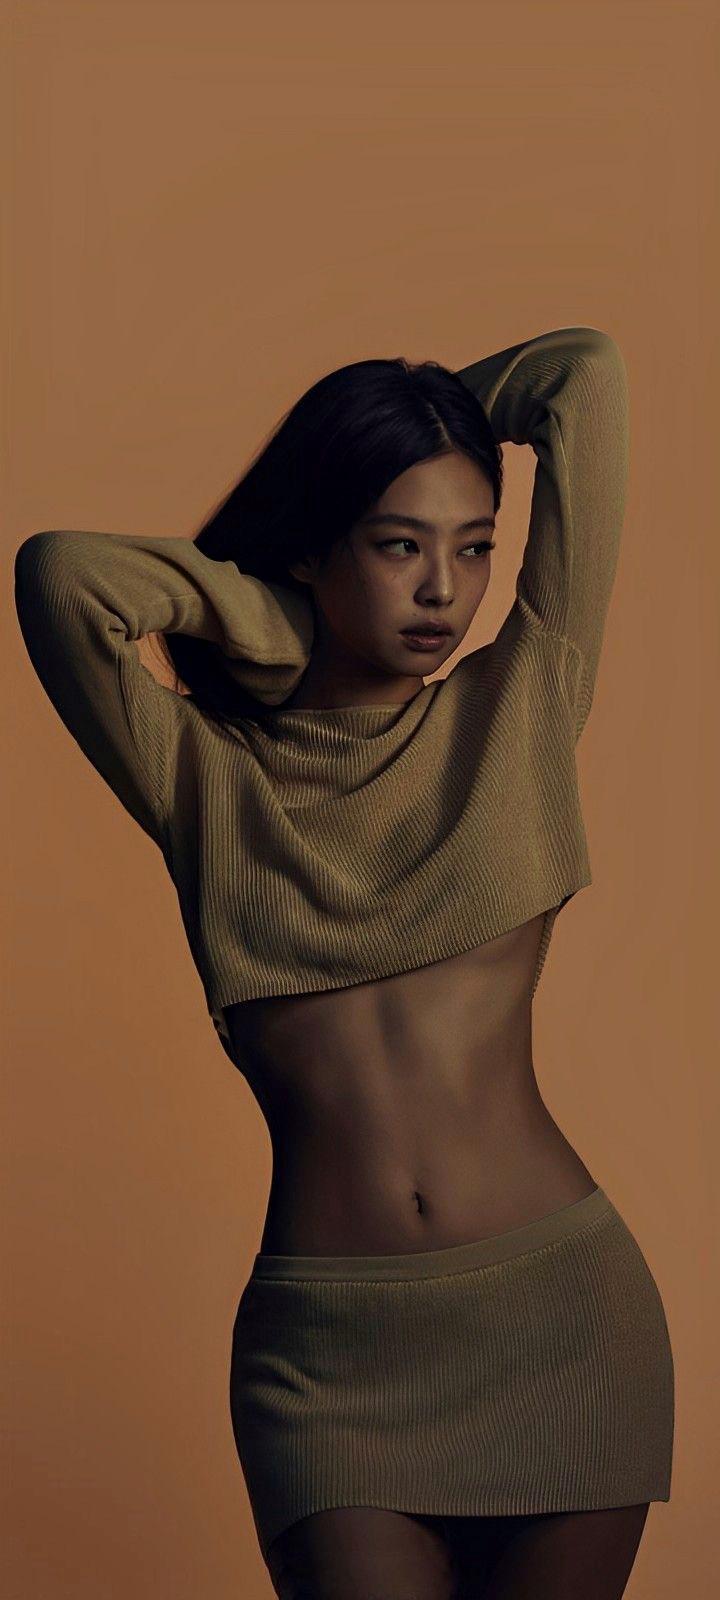 Jennie 김제니 [iPhone wallpaper]